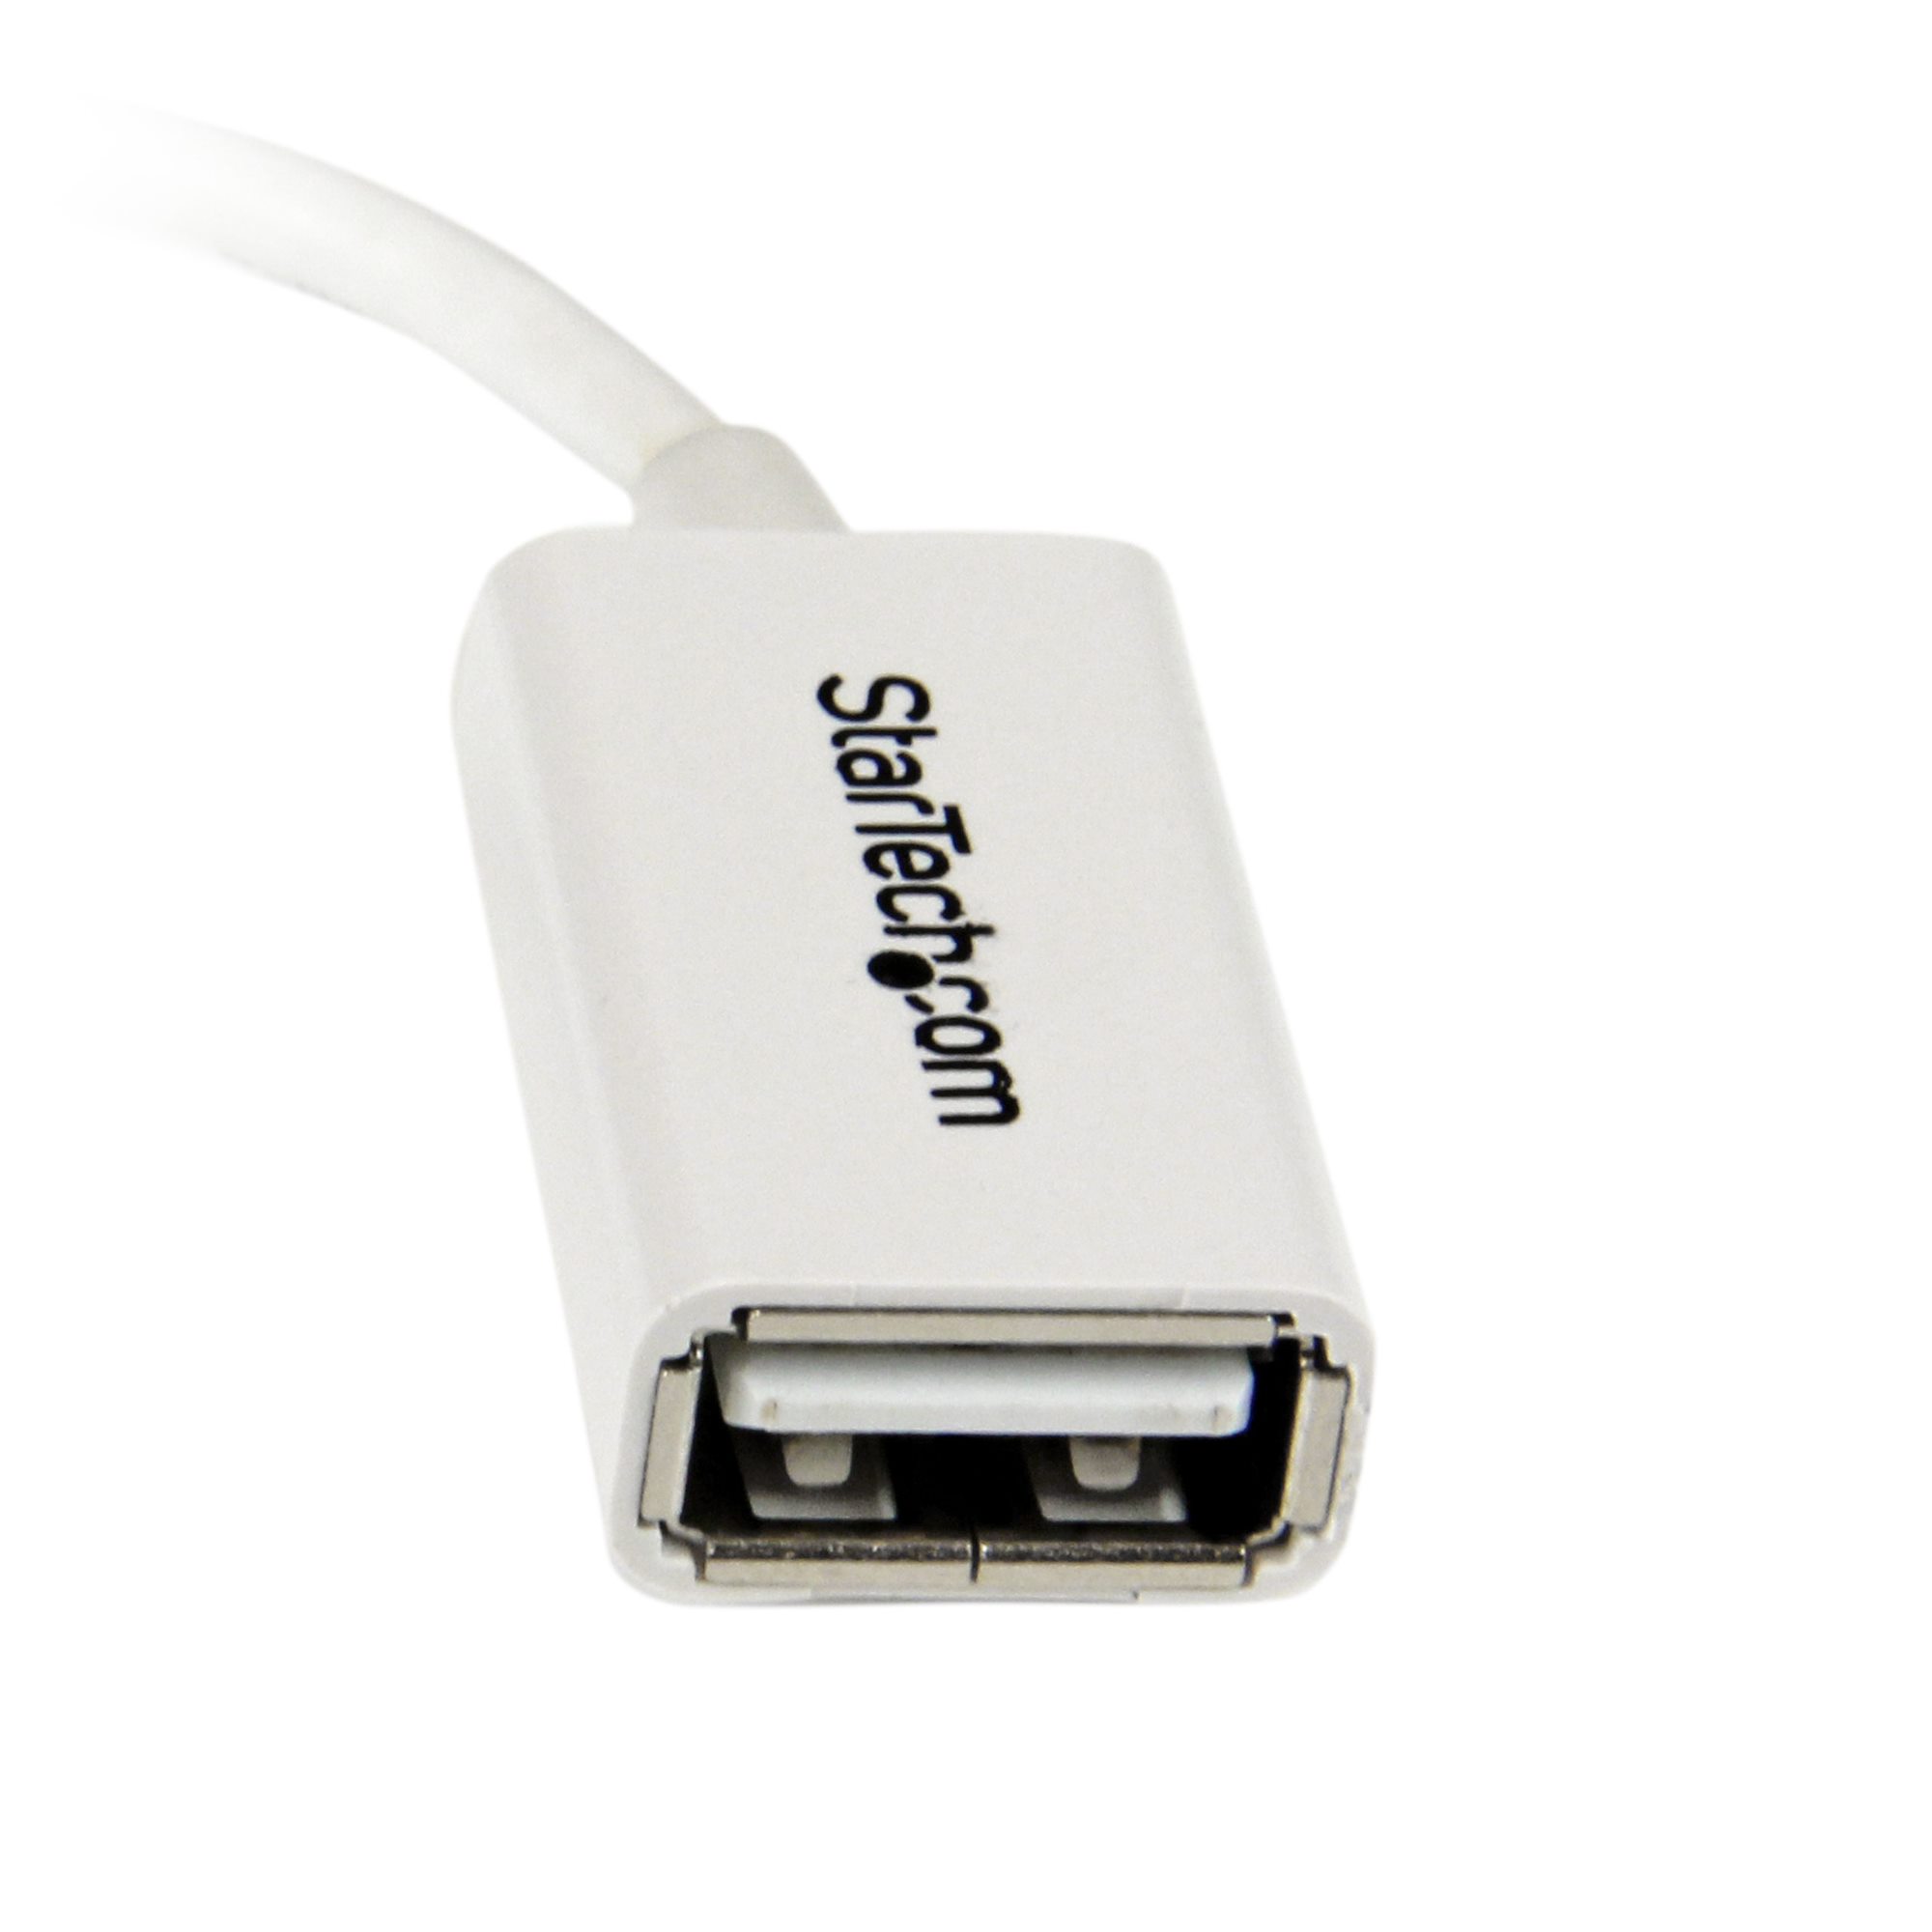 Host adapter. OTG кабель USB A USB A. USB адаптер 5b 1a. STARTECH UUSBOTGW / MICROUSB. Адаптер USB A(F) MICROB(F).